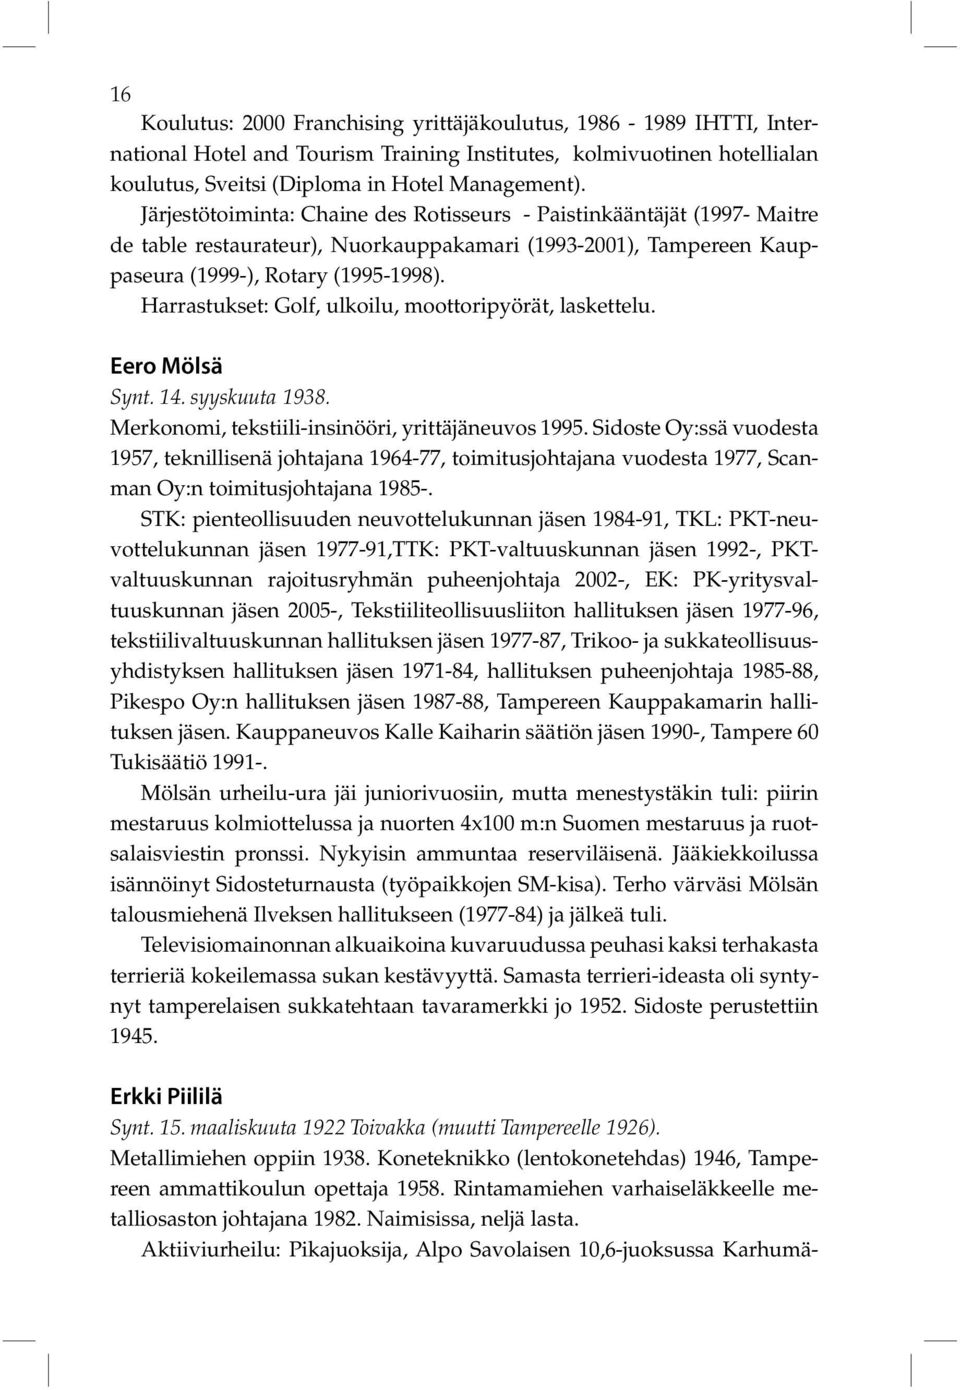 Harrastukset: Golf, ulkoilu, moottoripyörät, laskettelu. Eero Mölsä Synt. 14. syyskuuta 1938. Merkonomi, tekstiili-insinööri, yrittäjäneuvos 1995.